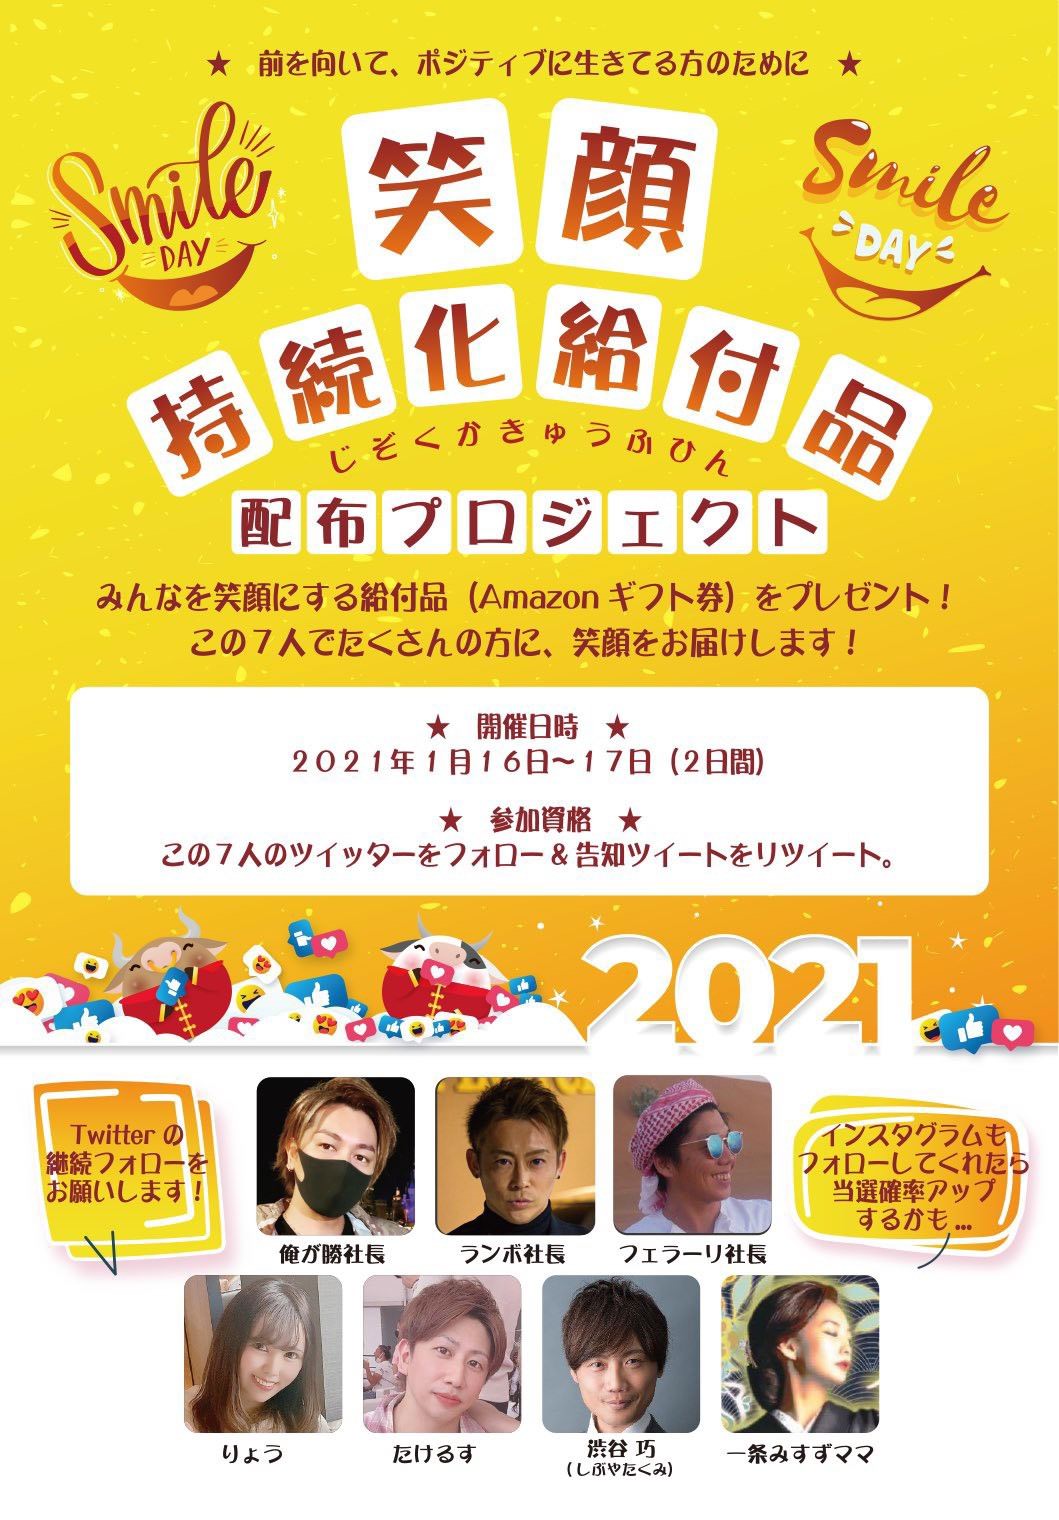 渋沢栄一翁が晩年愛した「オートミール」入り乾麺を開発！
NHK2021年大河ドラマ「青天を衝け」放送開始と同時リリース